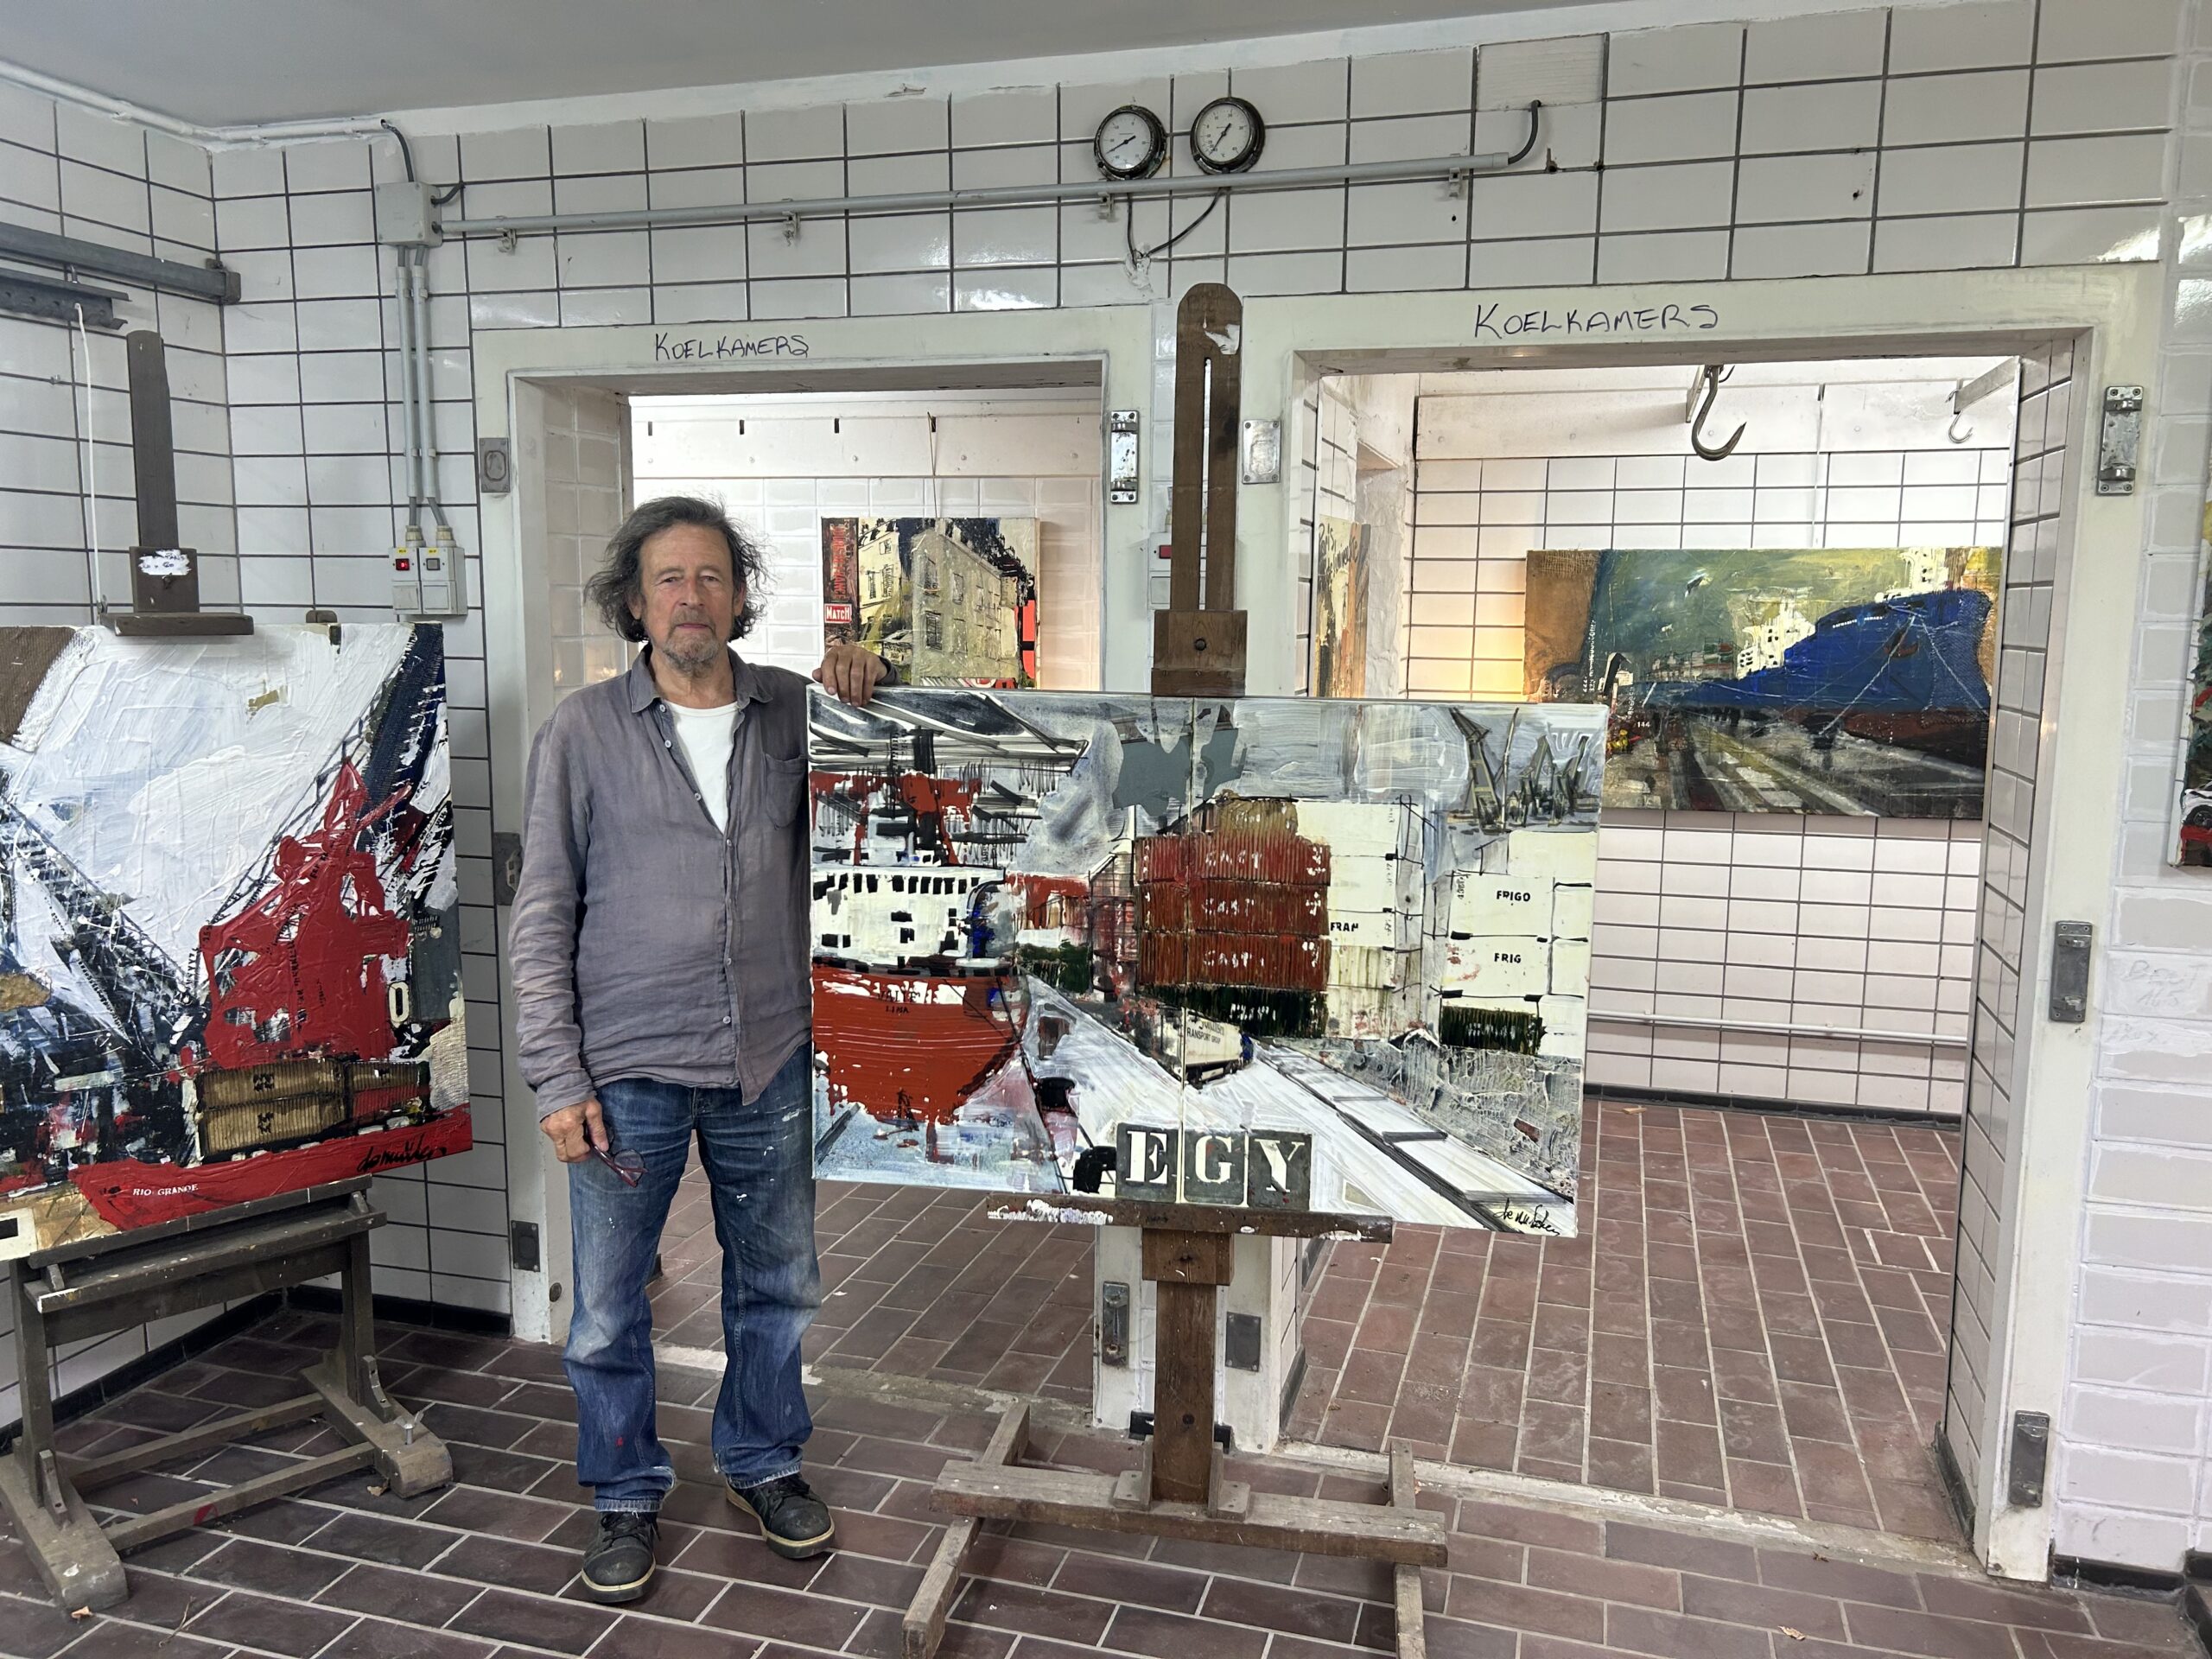 Kunstenaar Frank De Mulder vond uitvalsbasis in oude slachterij Vremde